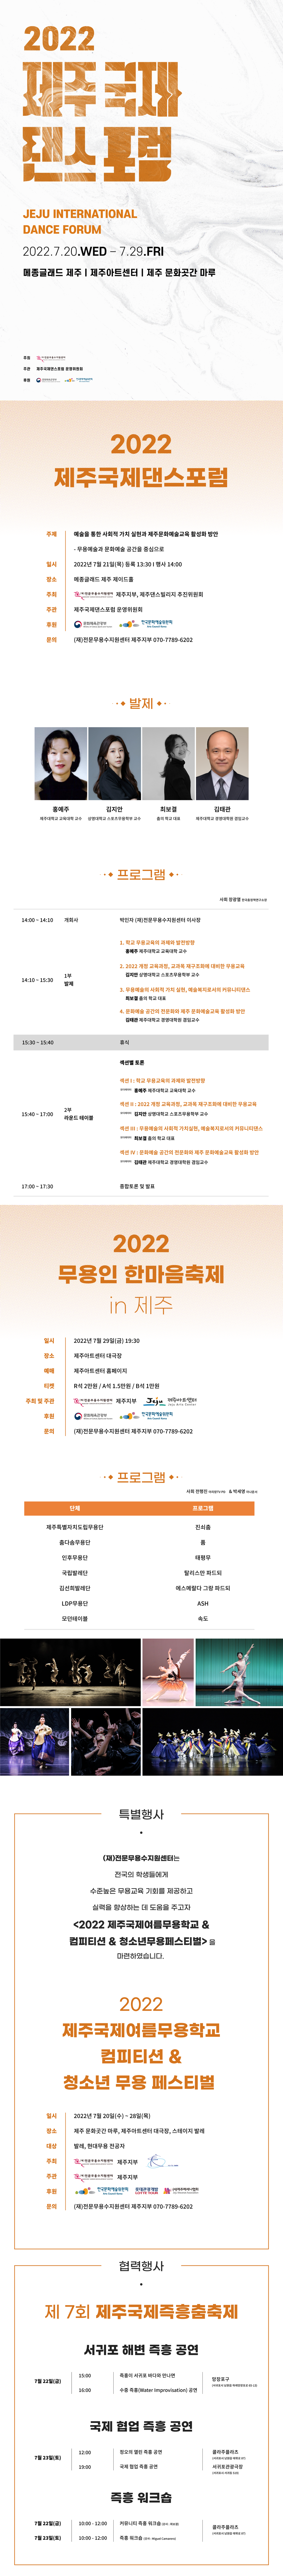 2022 제주국제댄스포럼 웹전단